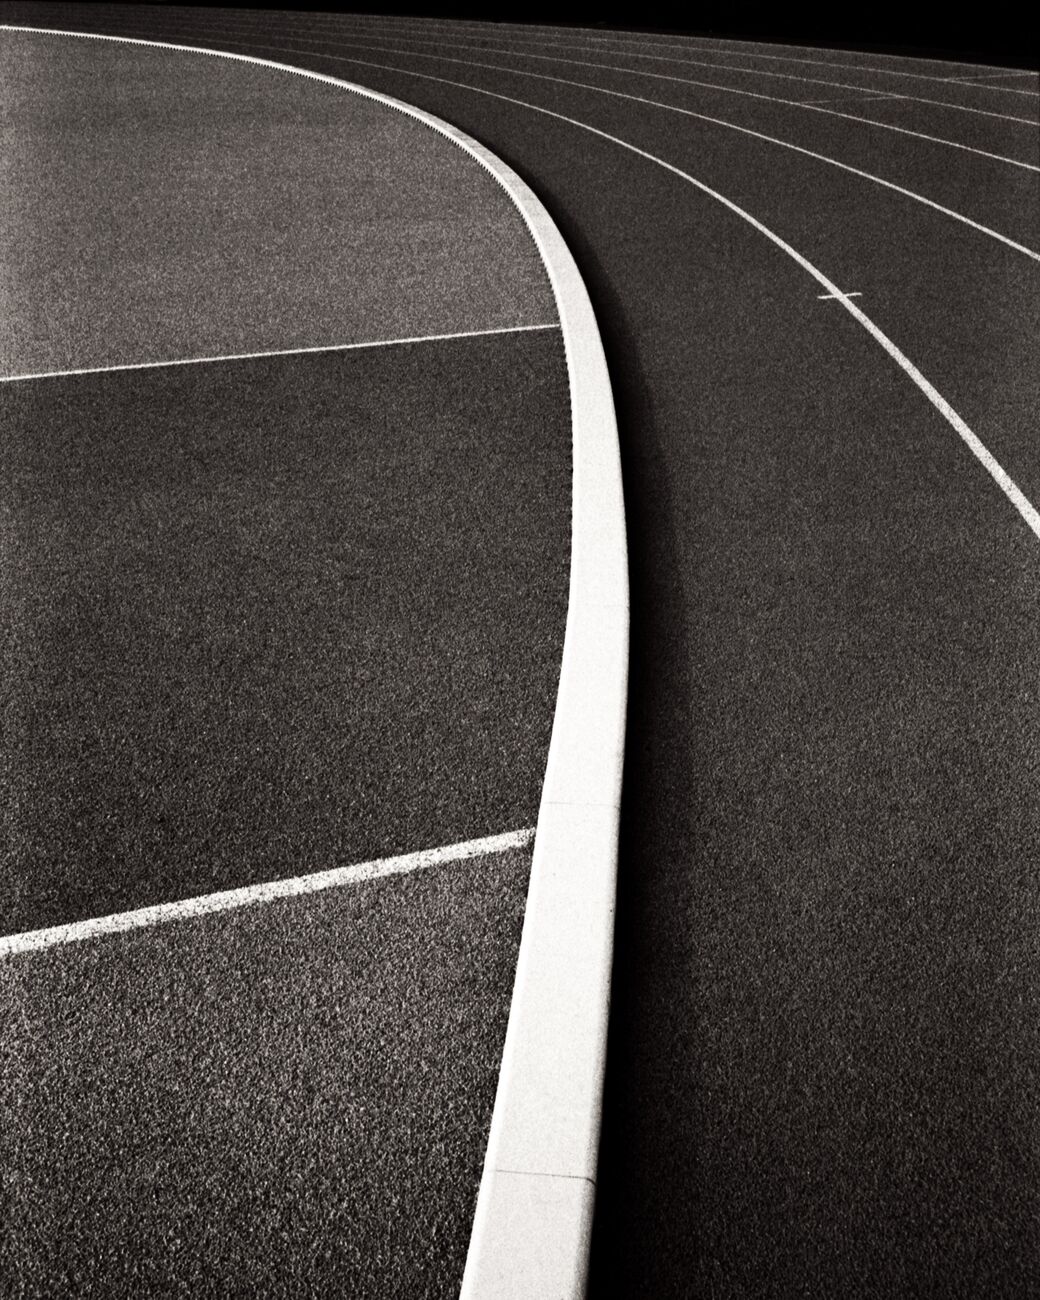 Running Track, Leo Lagrange Stadium, Saint-Nazaire, France. November 2022. Ref-11621 - Denis Olivier Photography